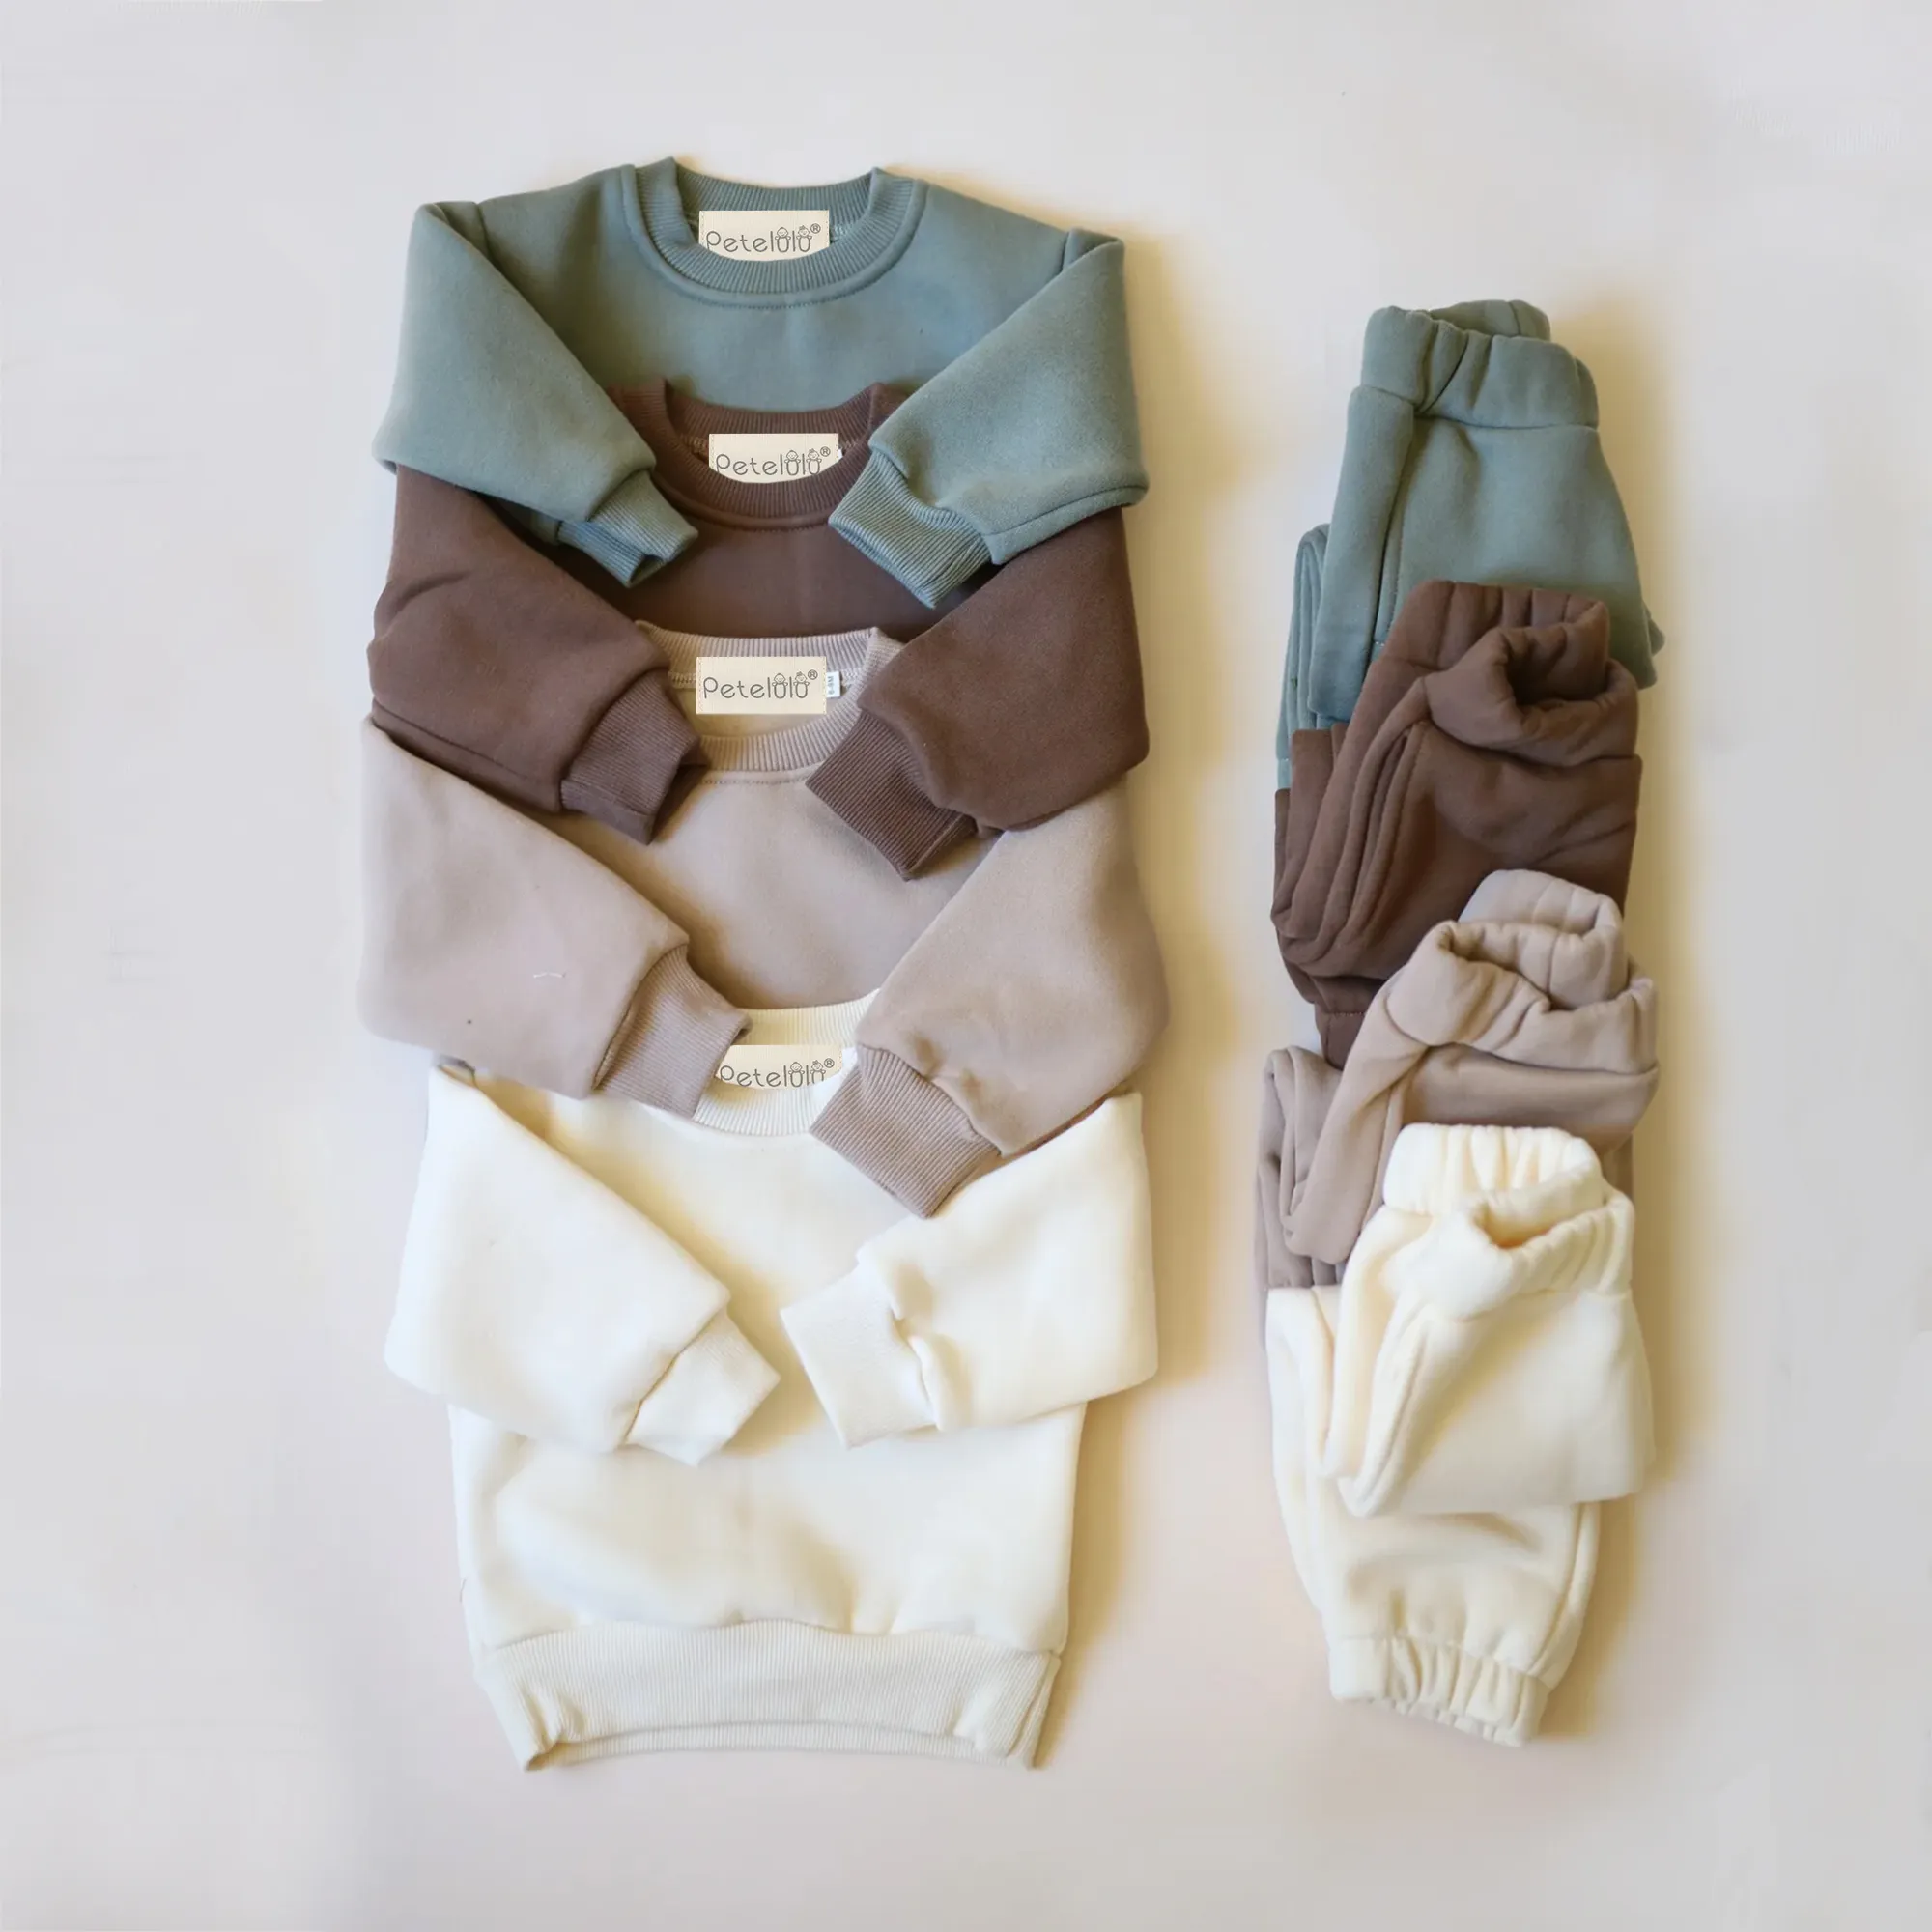 PETELULU orgânico Bebê Roupas Moletom Conjuntos Outono Plain crianças roupas set Unisex Soft Kids Jogger Outfits Sets